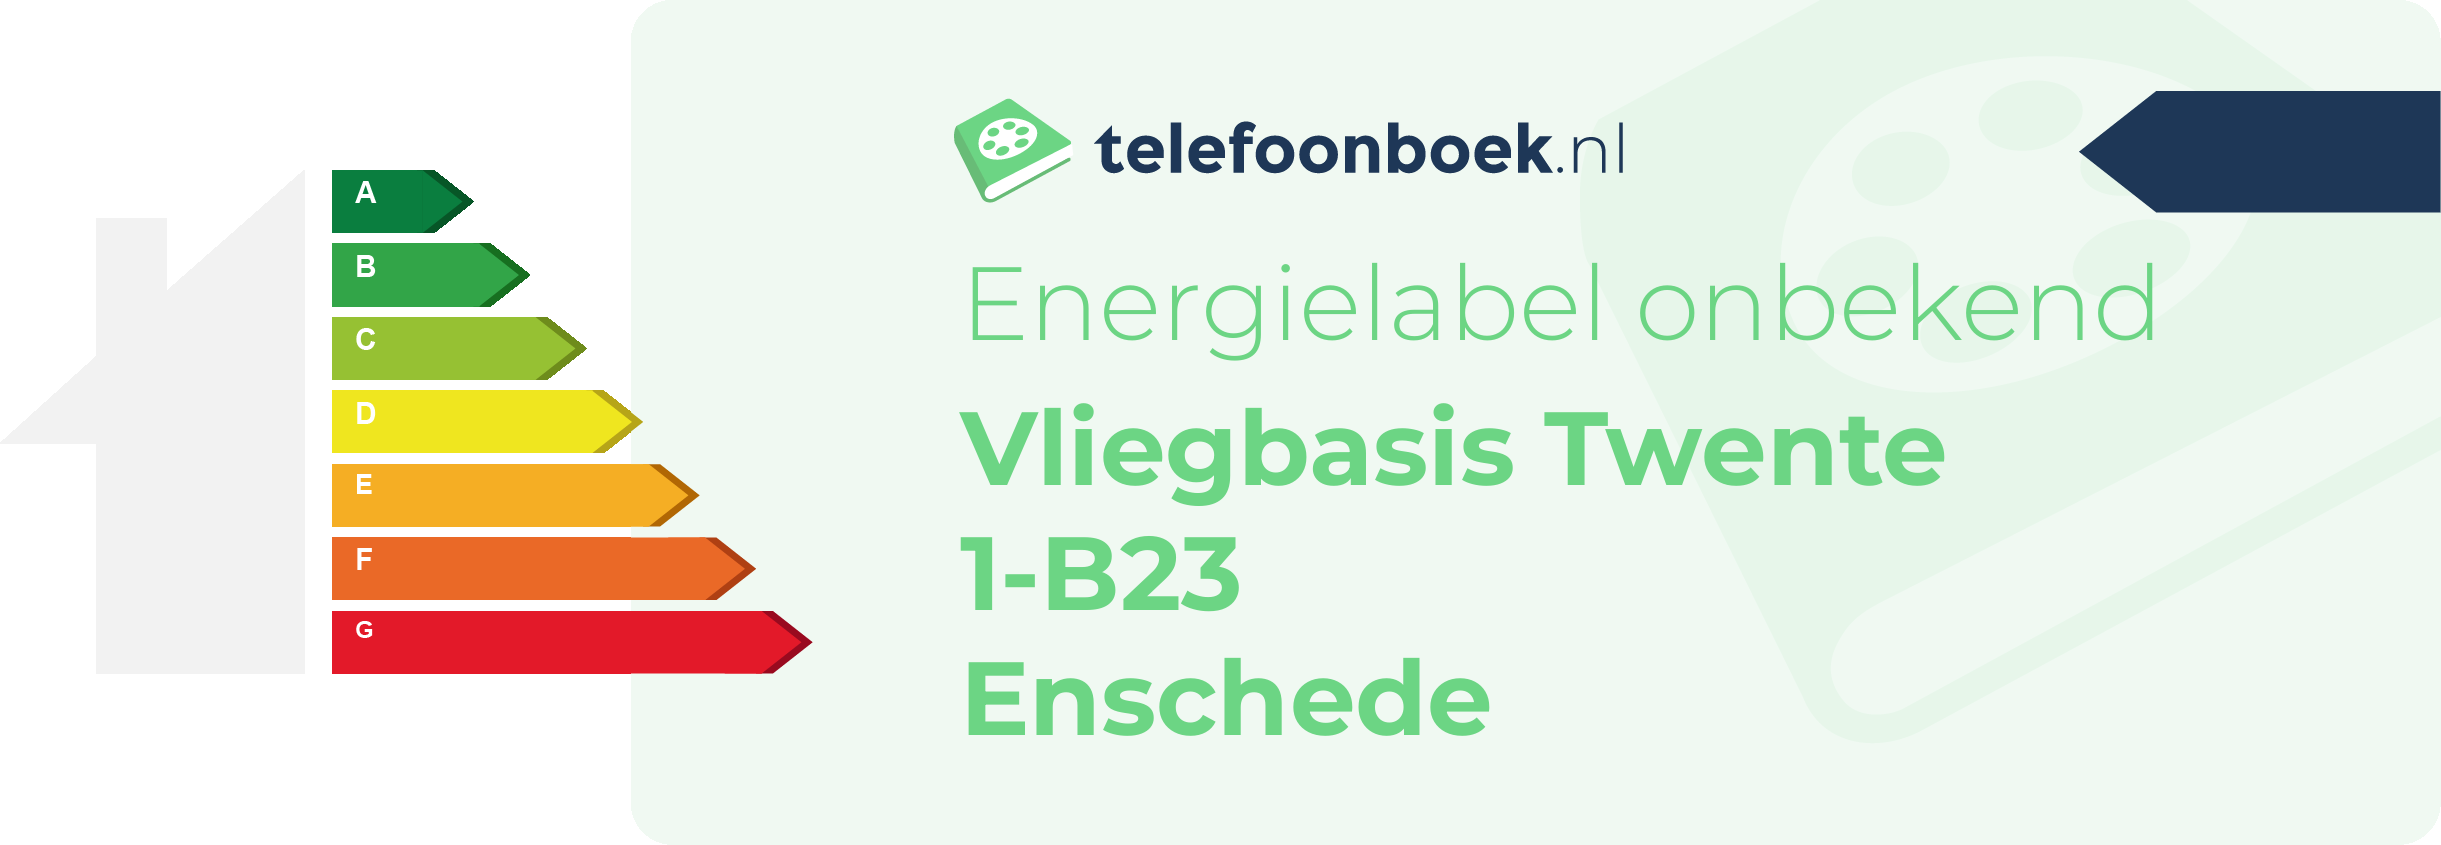 Energielabel Vliegbasis Twente 1-B23 Enschede